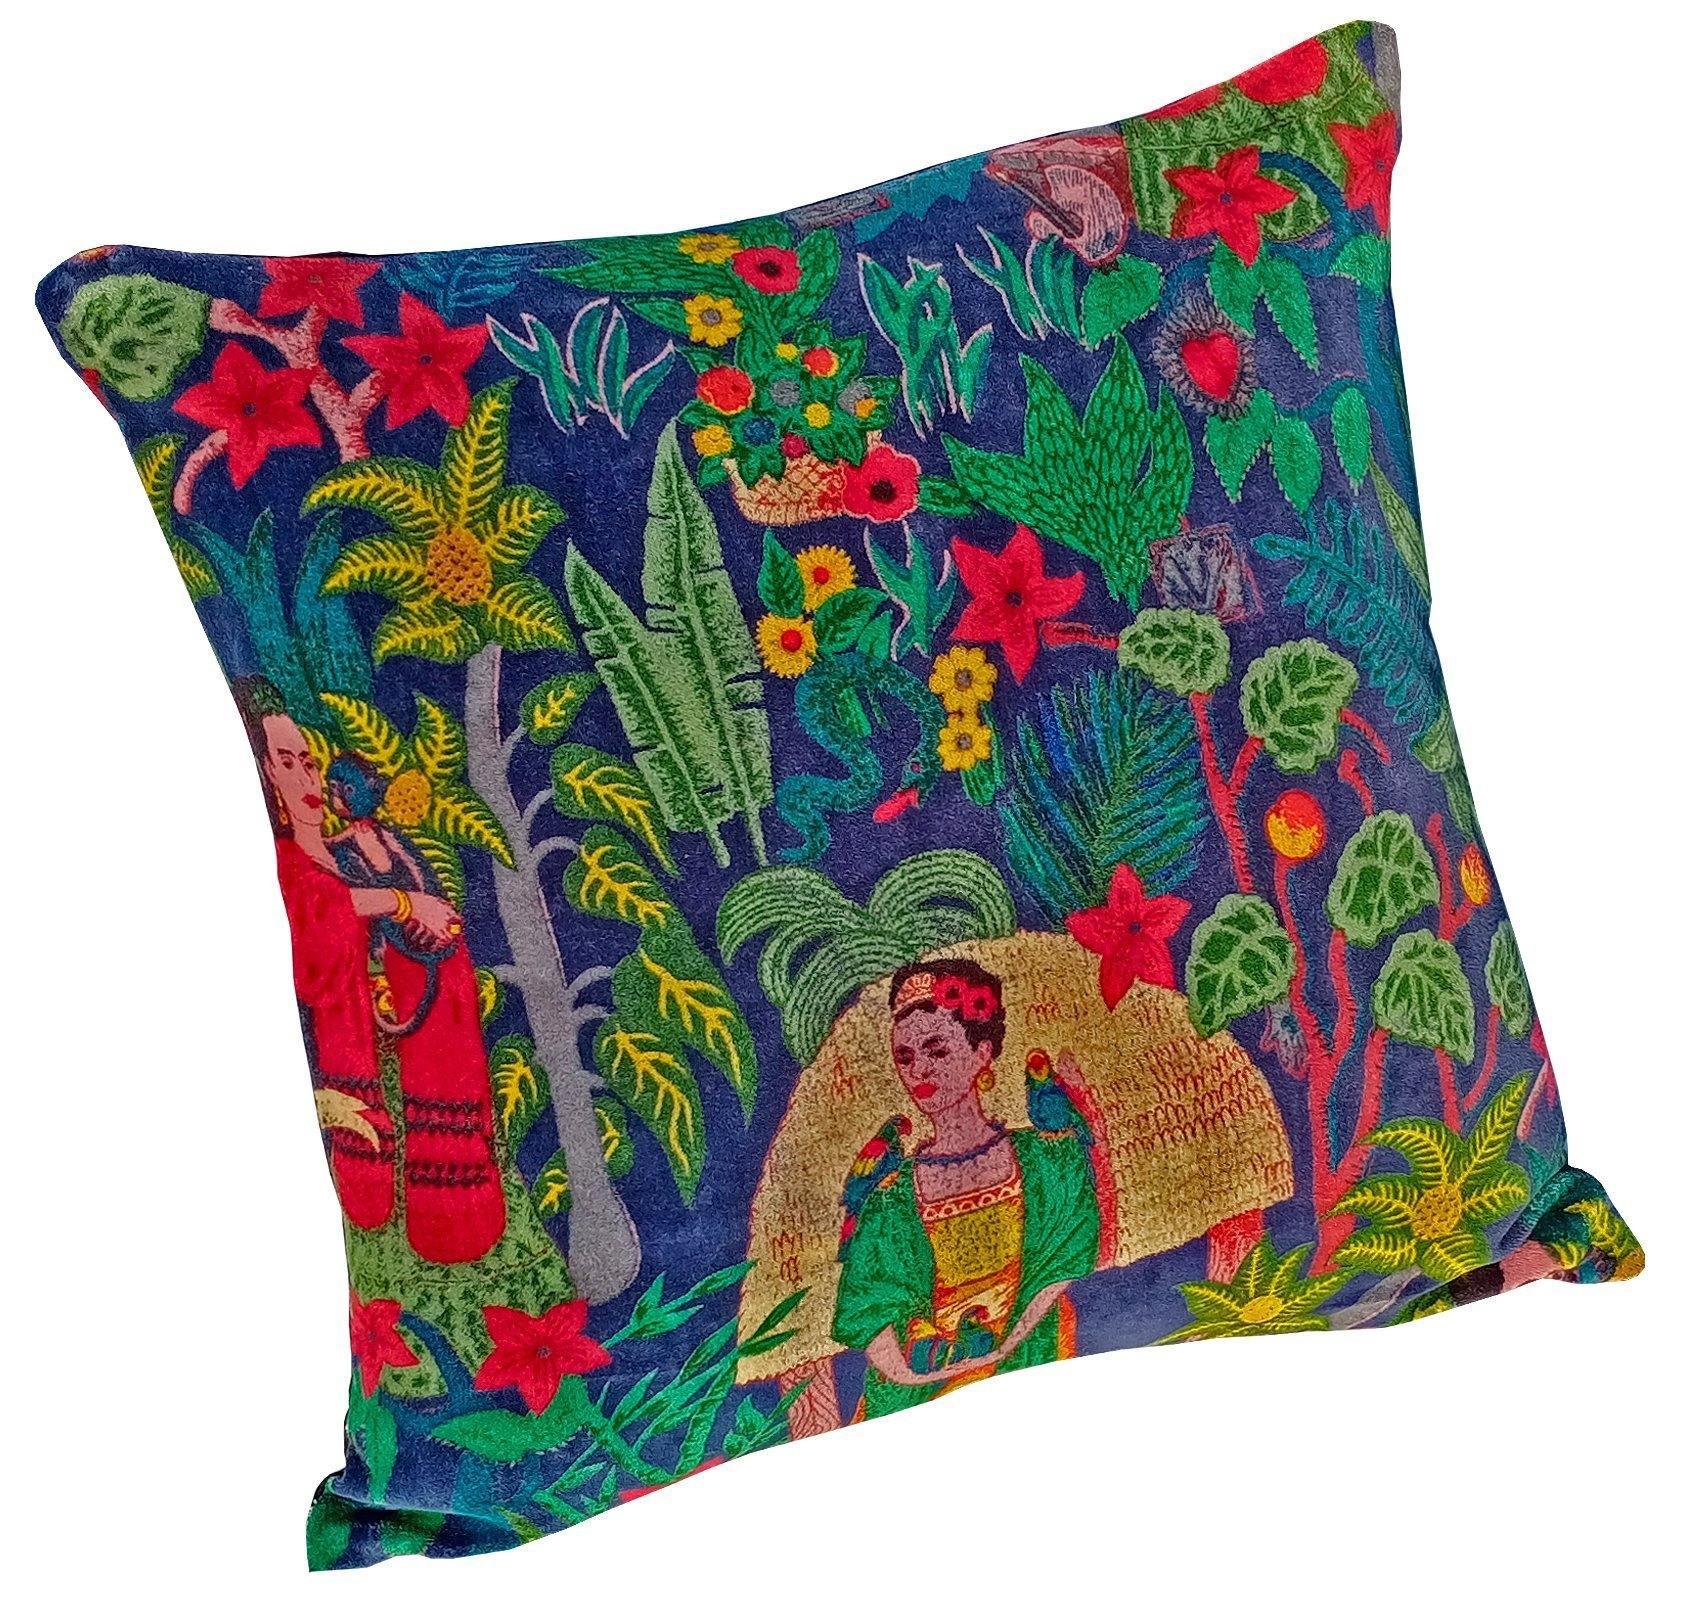 Frida Kahlo Velvet Cushion Cover-Blue - The Teal Thread